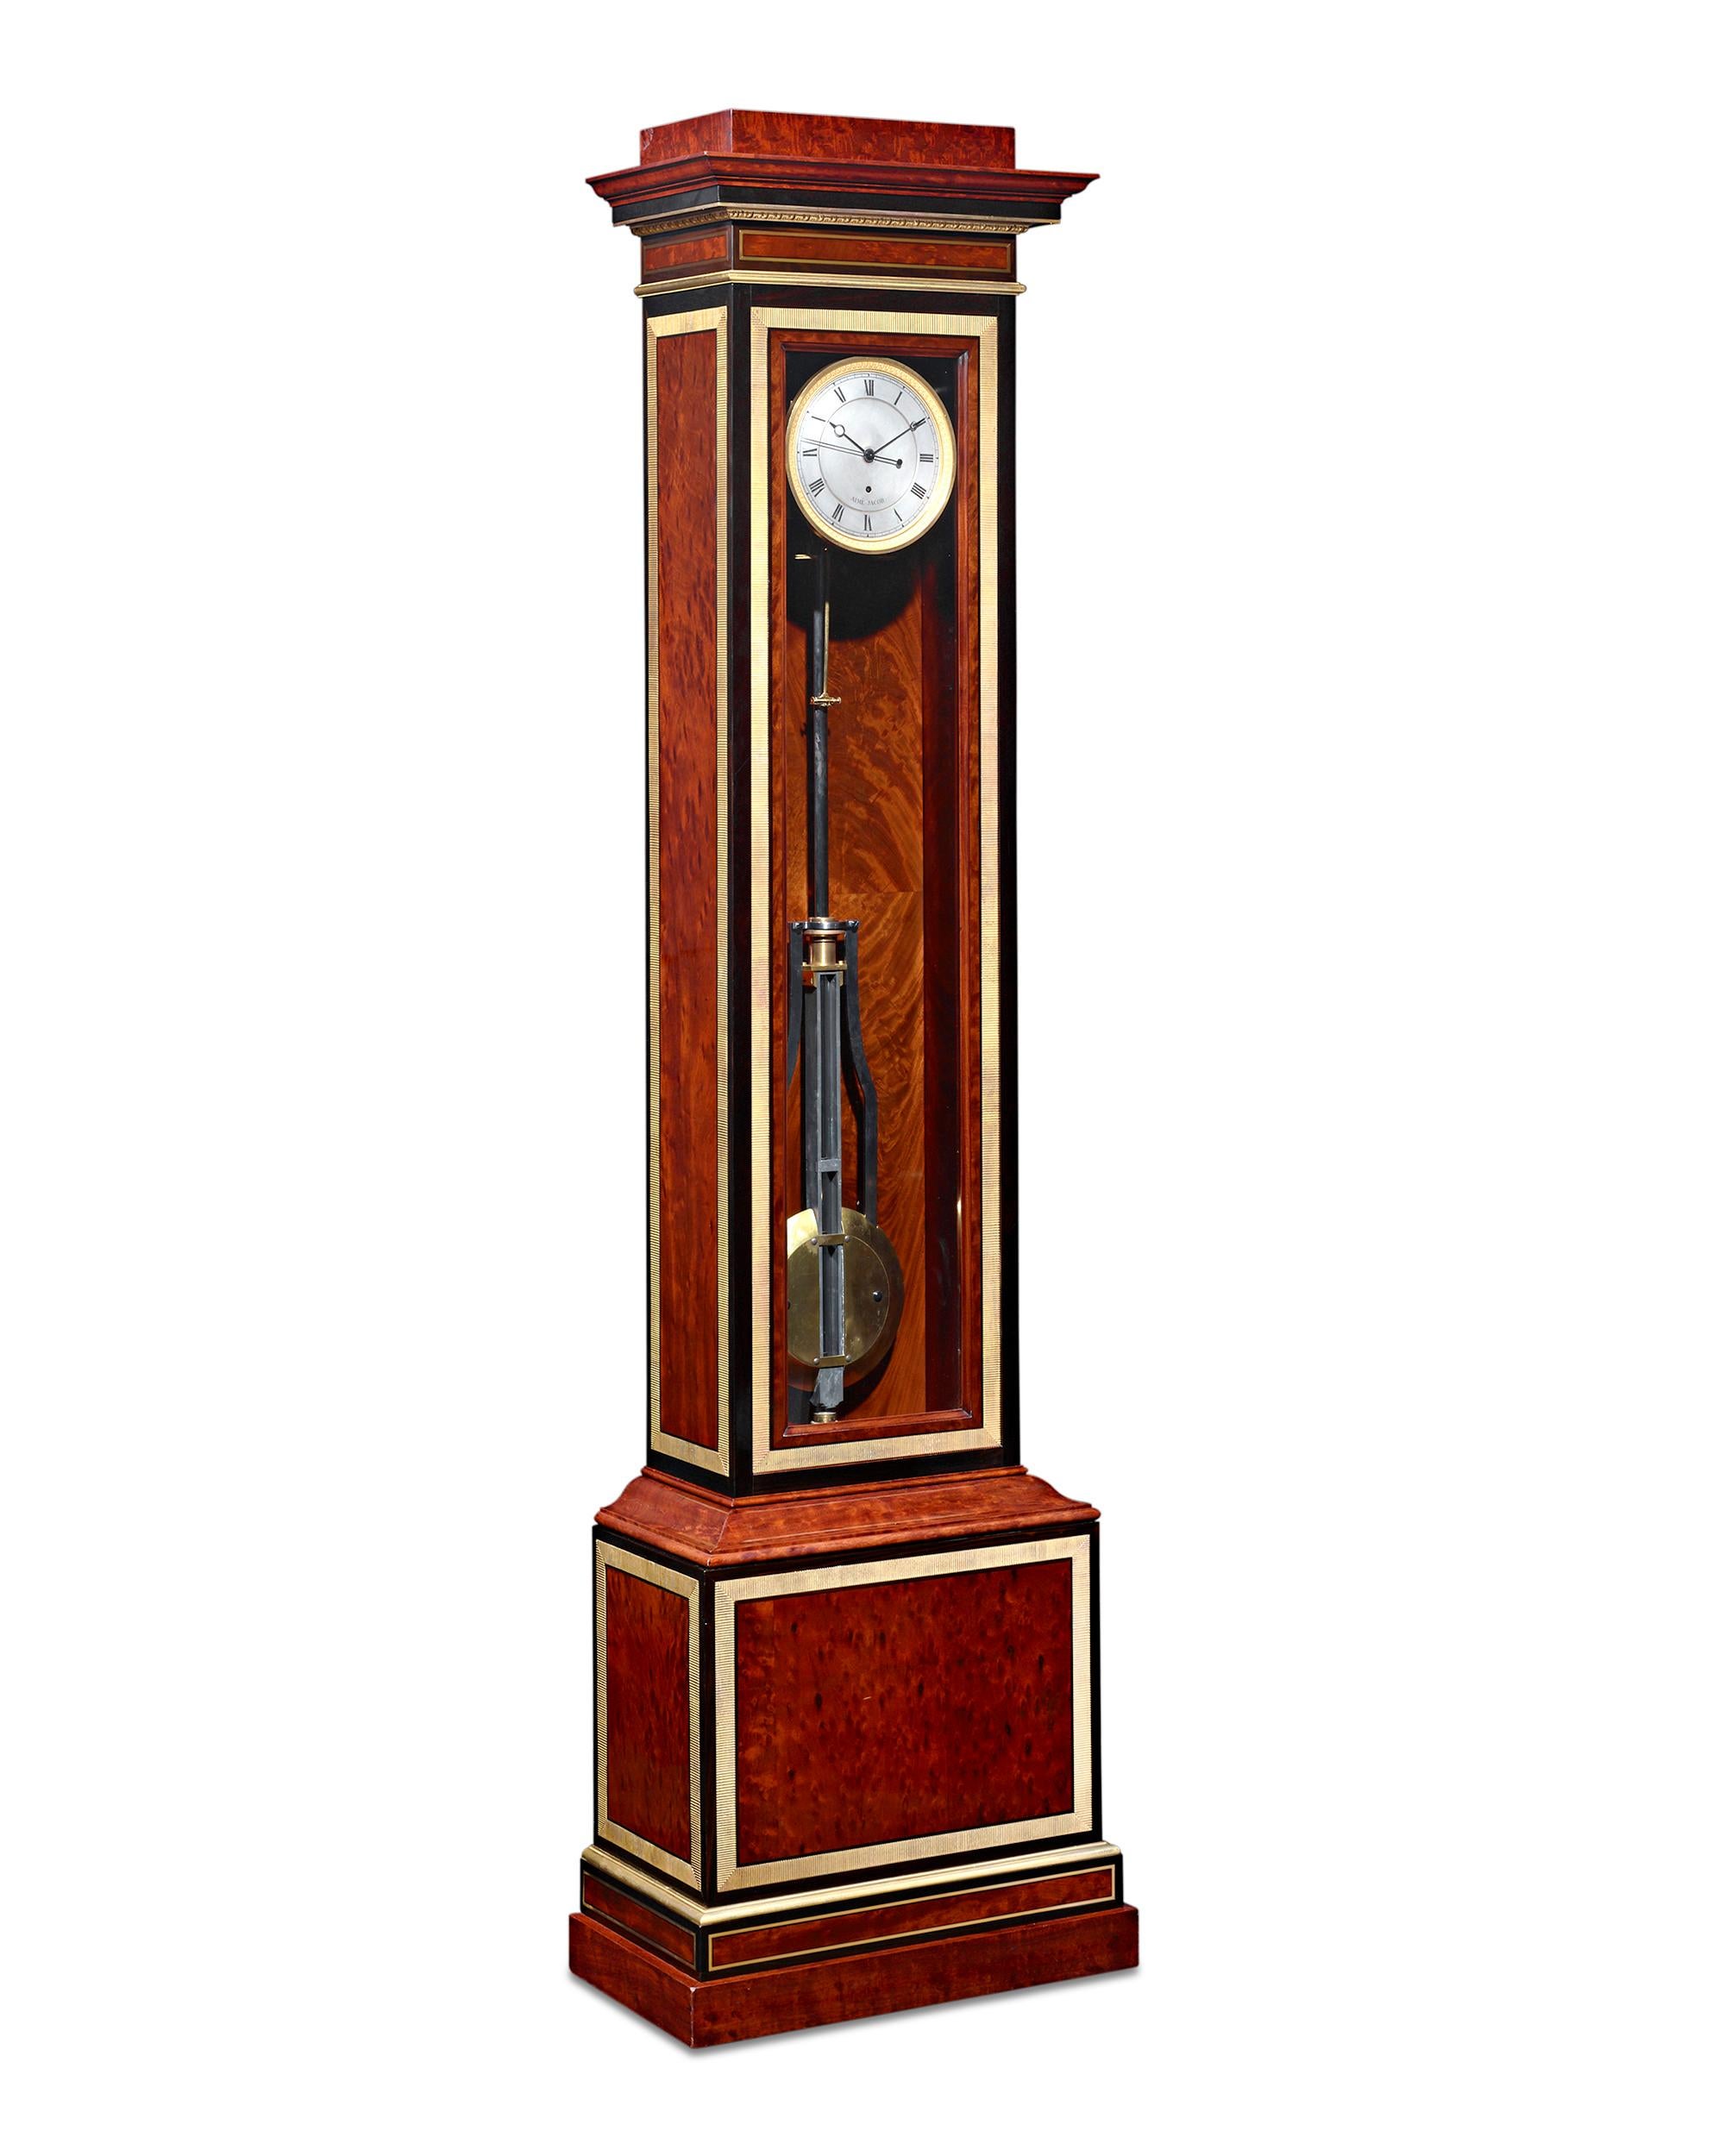 Cette importante horloge à régulateur illustre parfaitement les sommets de l'horlogerie de précision. Si les horloges à régulateur sont connues pour leur incroyable précision, ce garde-temps est vraiment exceptionnel par sa maîtrise mécanique.